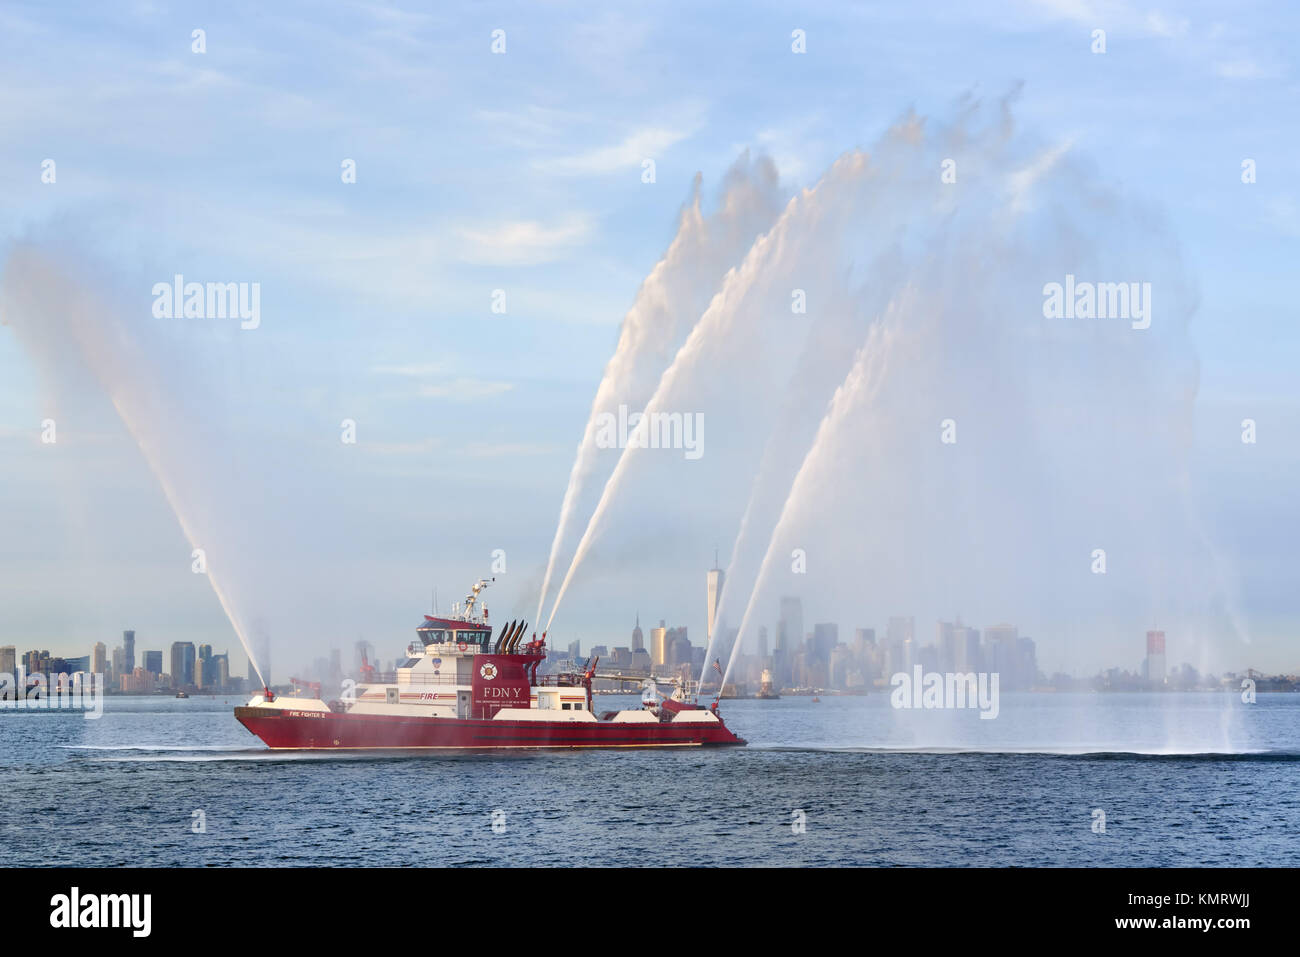 Fire Fighter II Feuerlöschboot mit Wasserstrahlen bei voller Leistung vor der Lower Manhattan (einschließlich das One World Trade Center) bei Sonnenuntergang. New York City Hafen Stockfoto